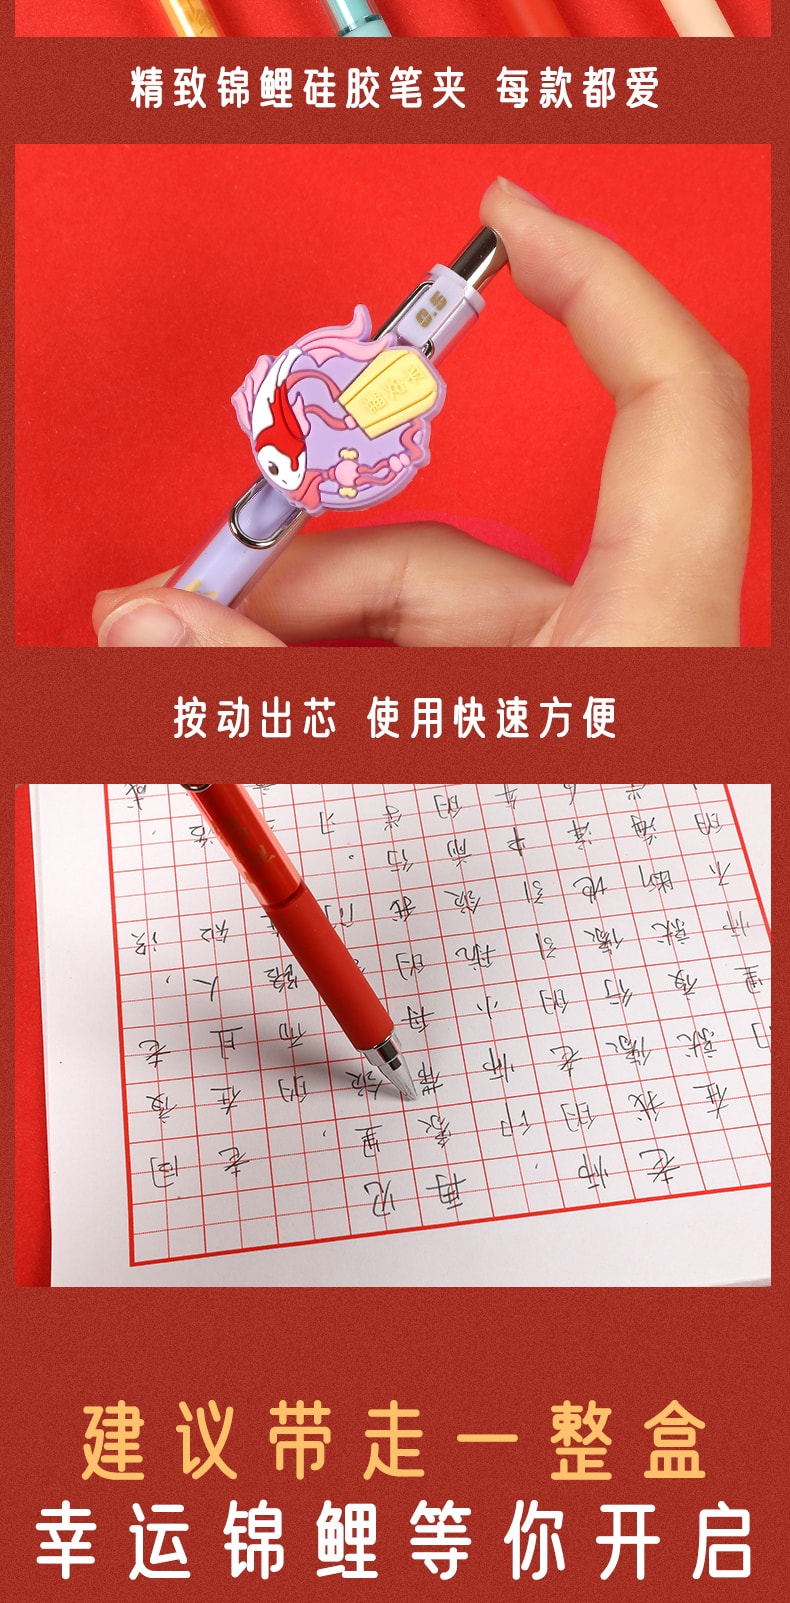 [中国直邮]晨光文具(M&G) 锦鲤系列自动铅笔盲盒 AMPJ6103 0.5mm 7款随机+1款隐藏 1支装